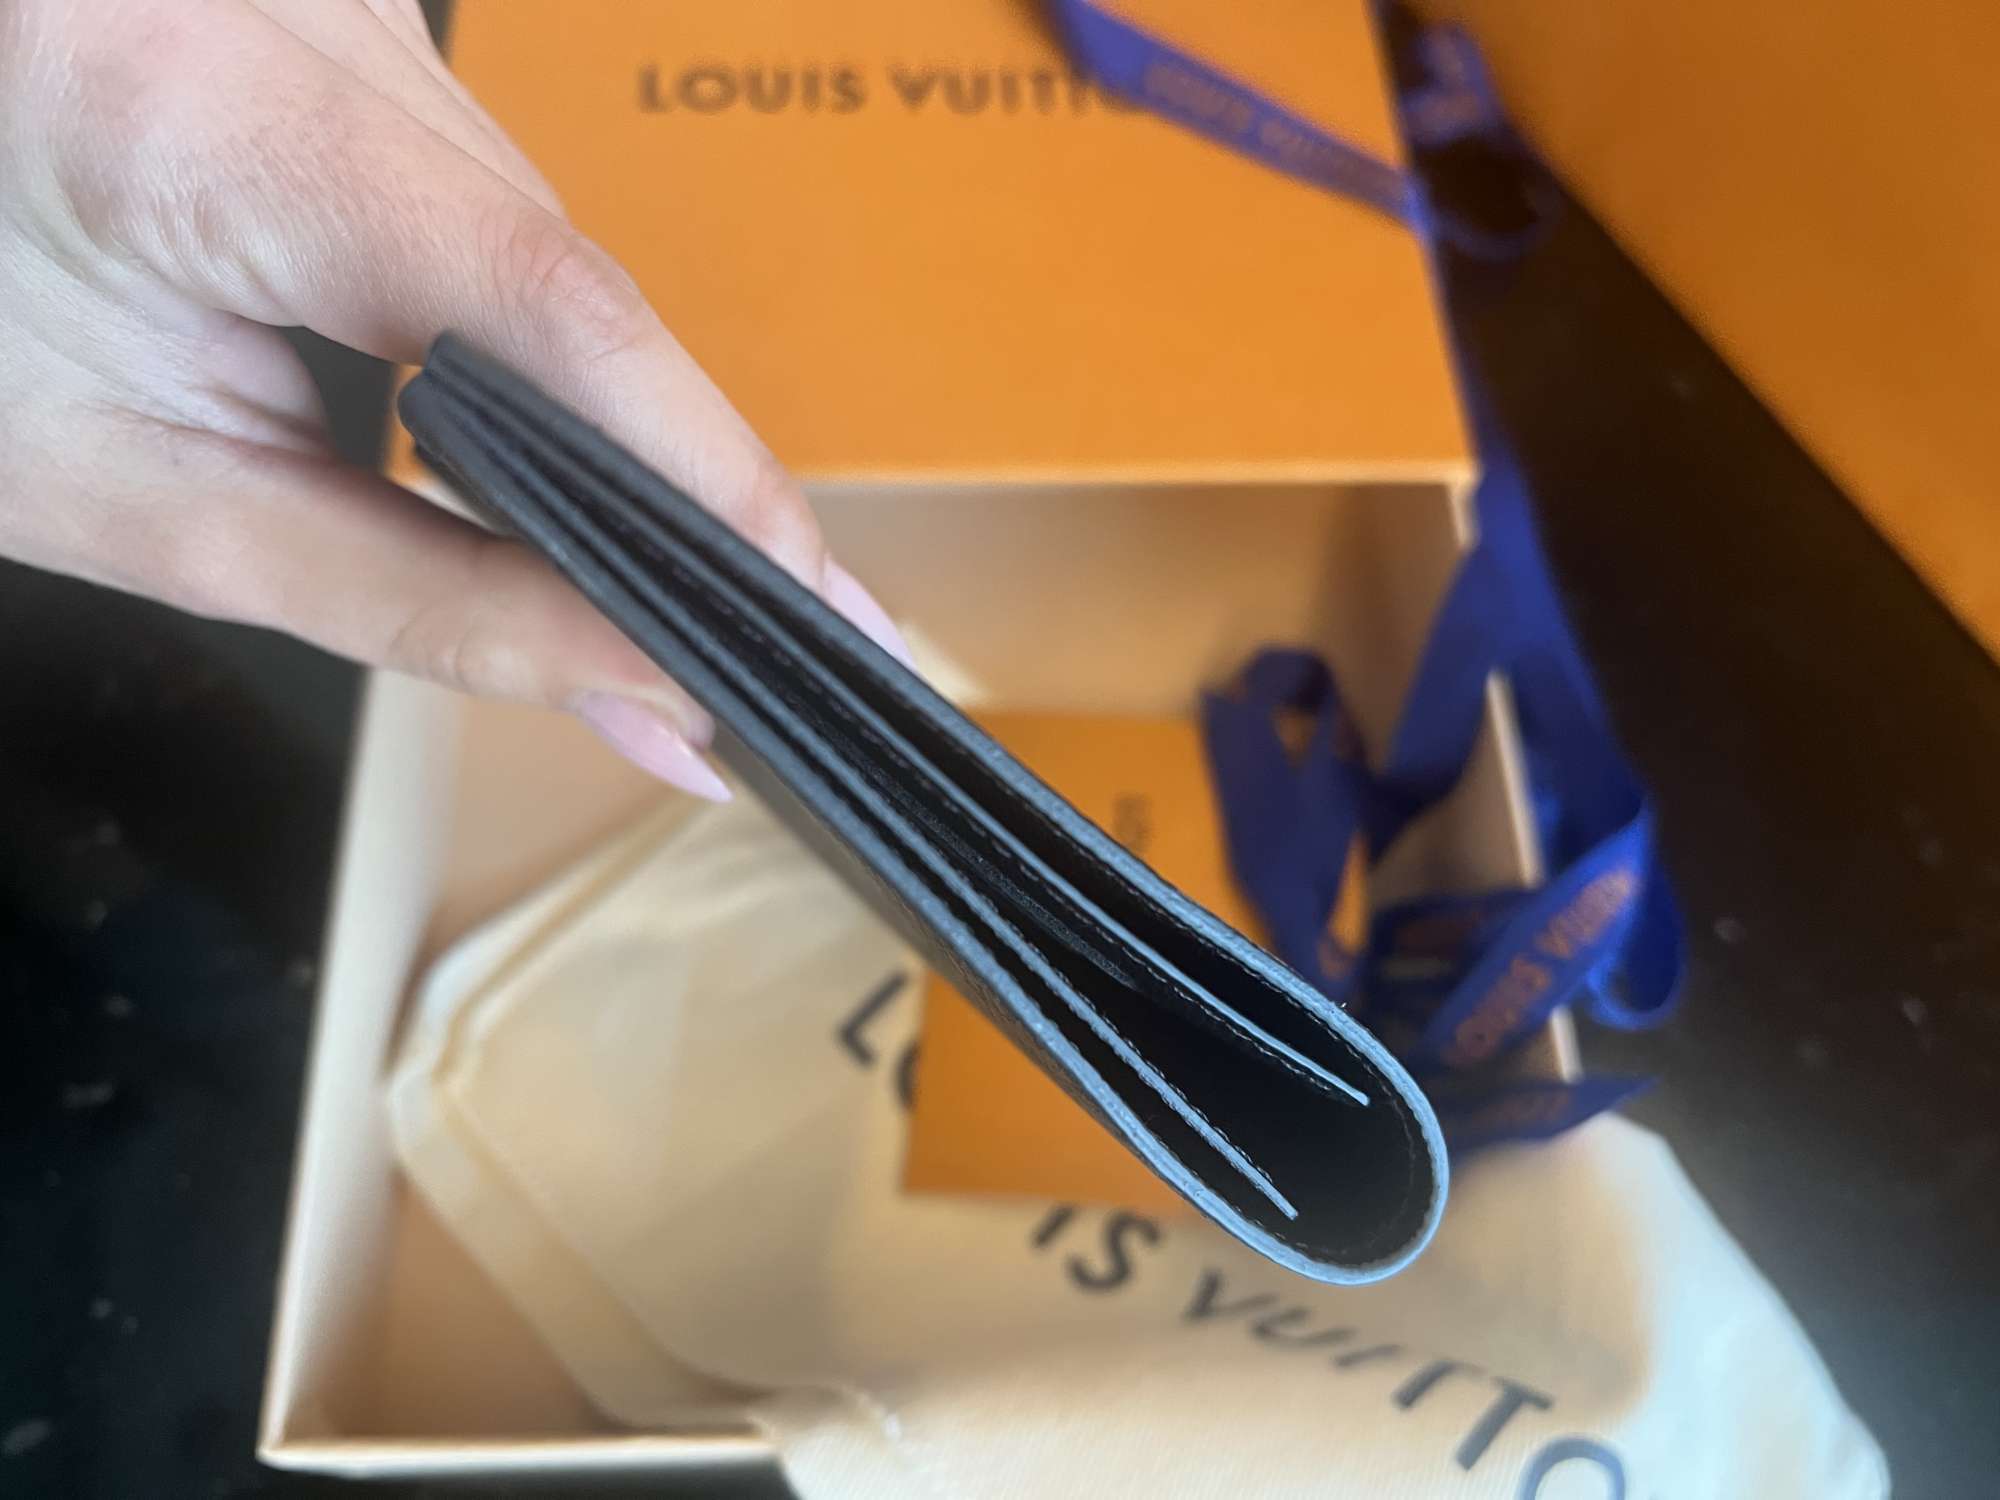 Louis Vuitton obal na pas